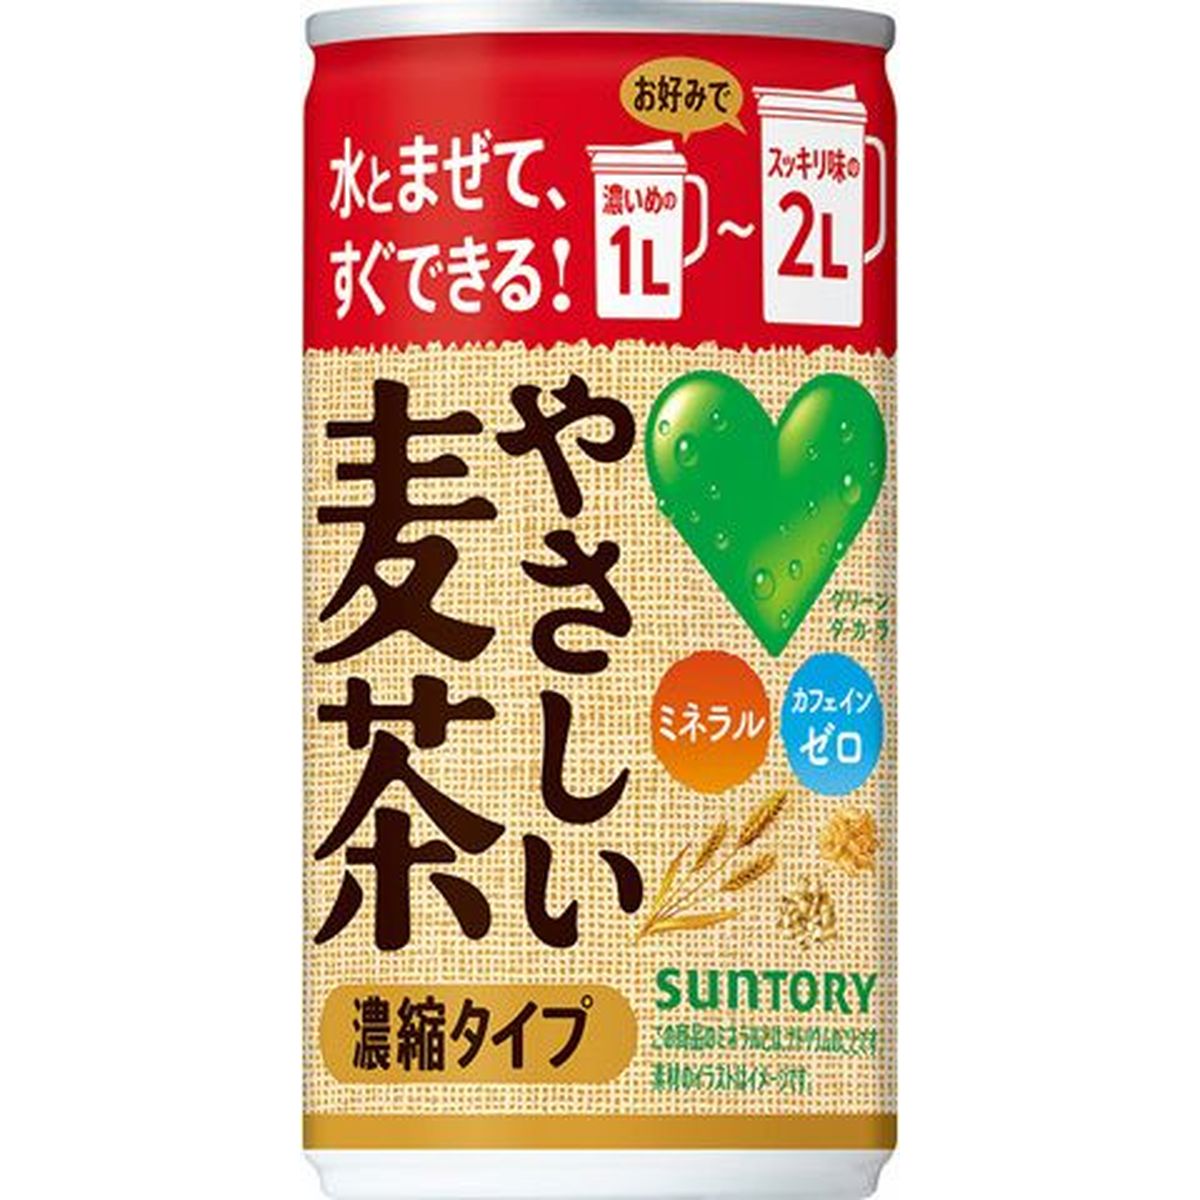 【30個入リ】サントリー グリーンダカラ ヤサシイ麦茶濃縮タイプ 缶 180g